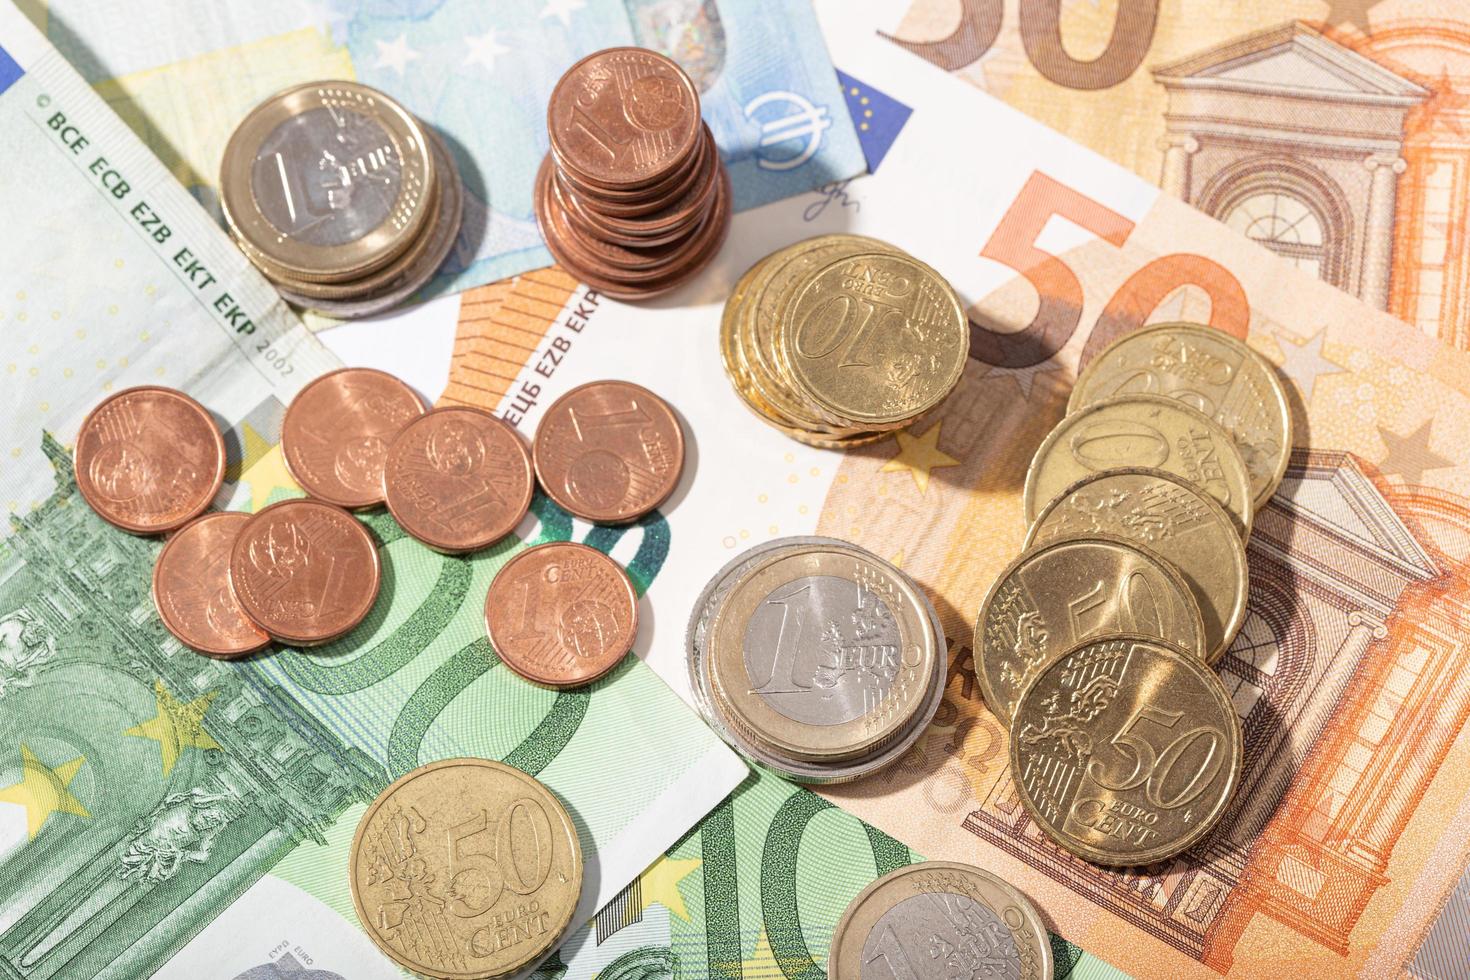 eurogeldbankbiljetten en -munten foto